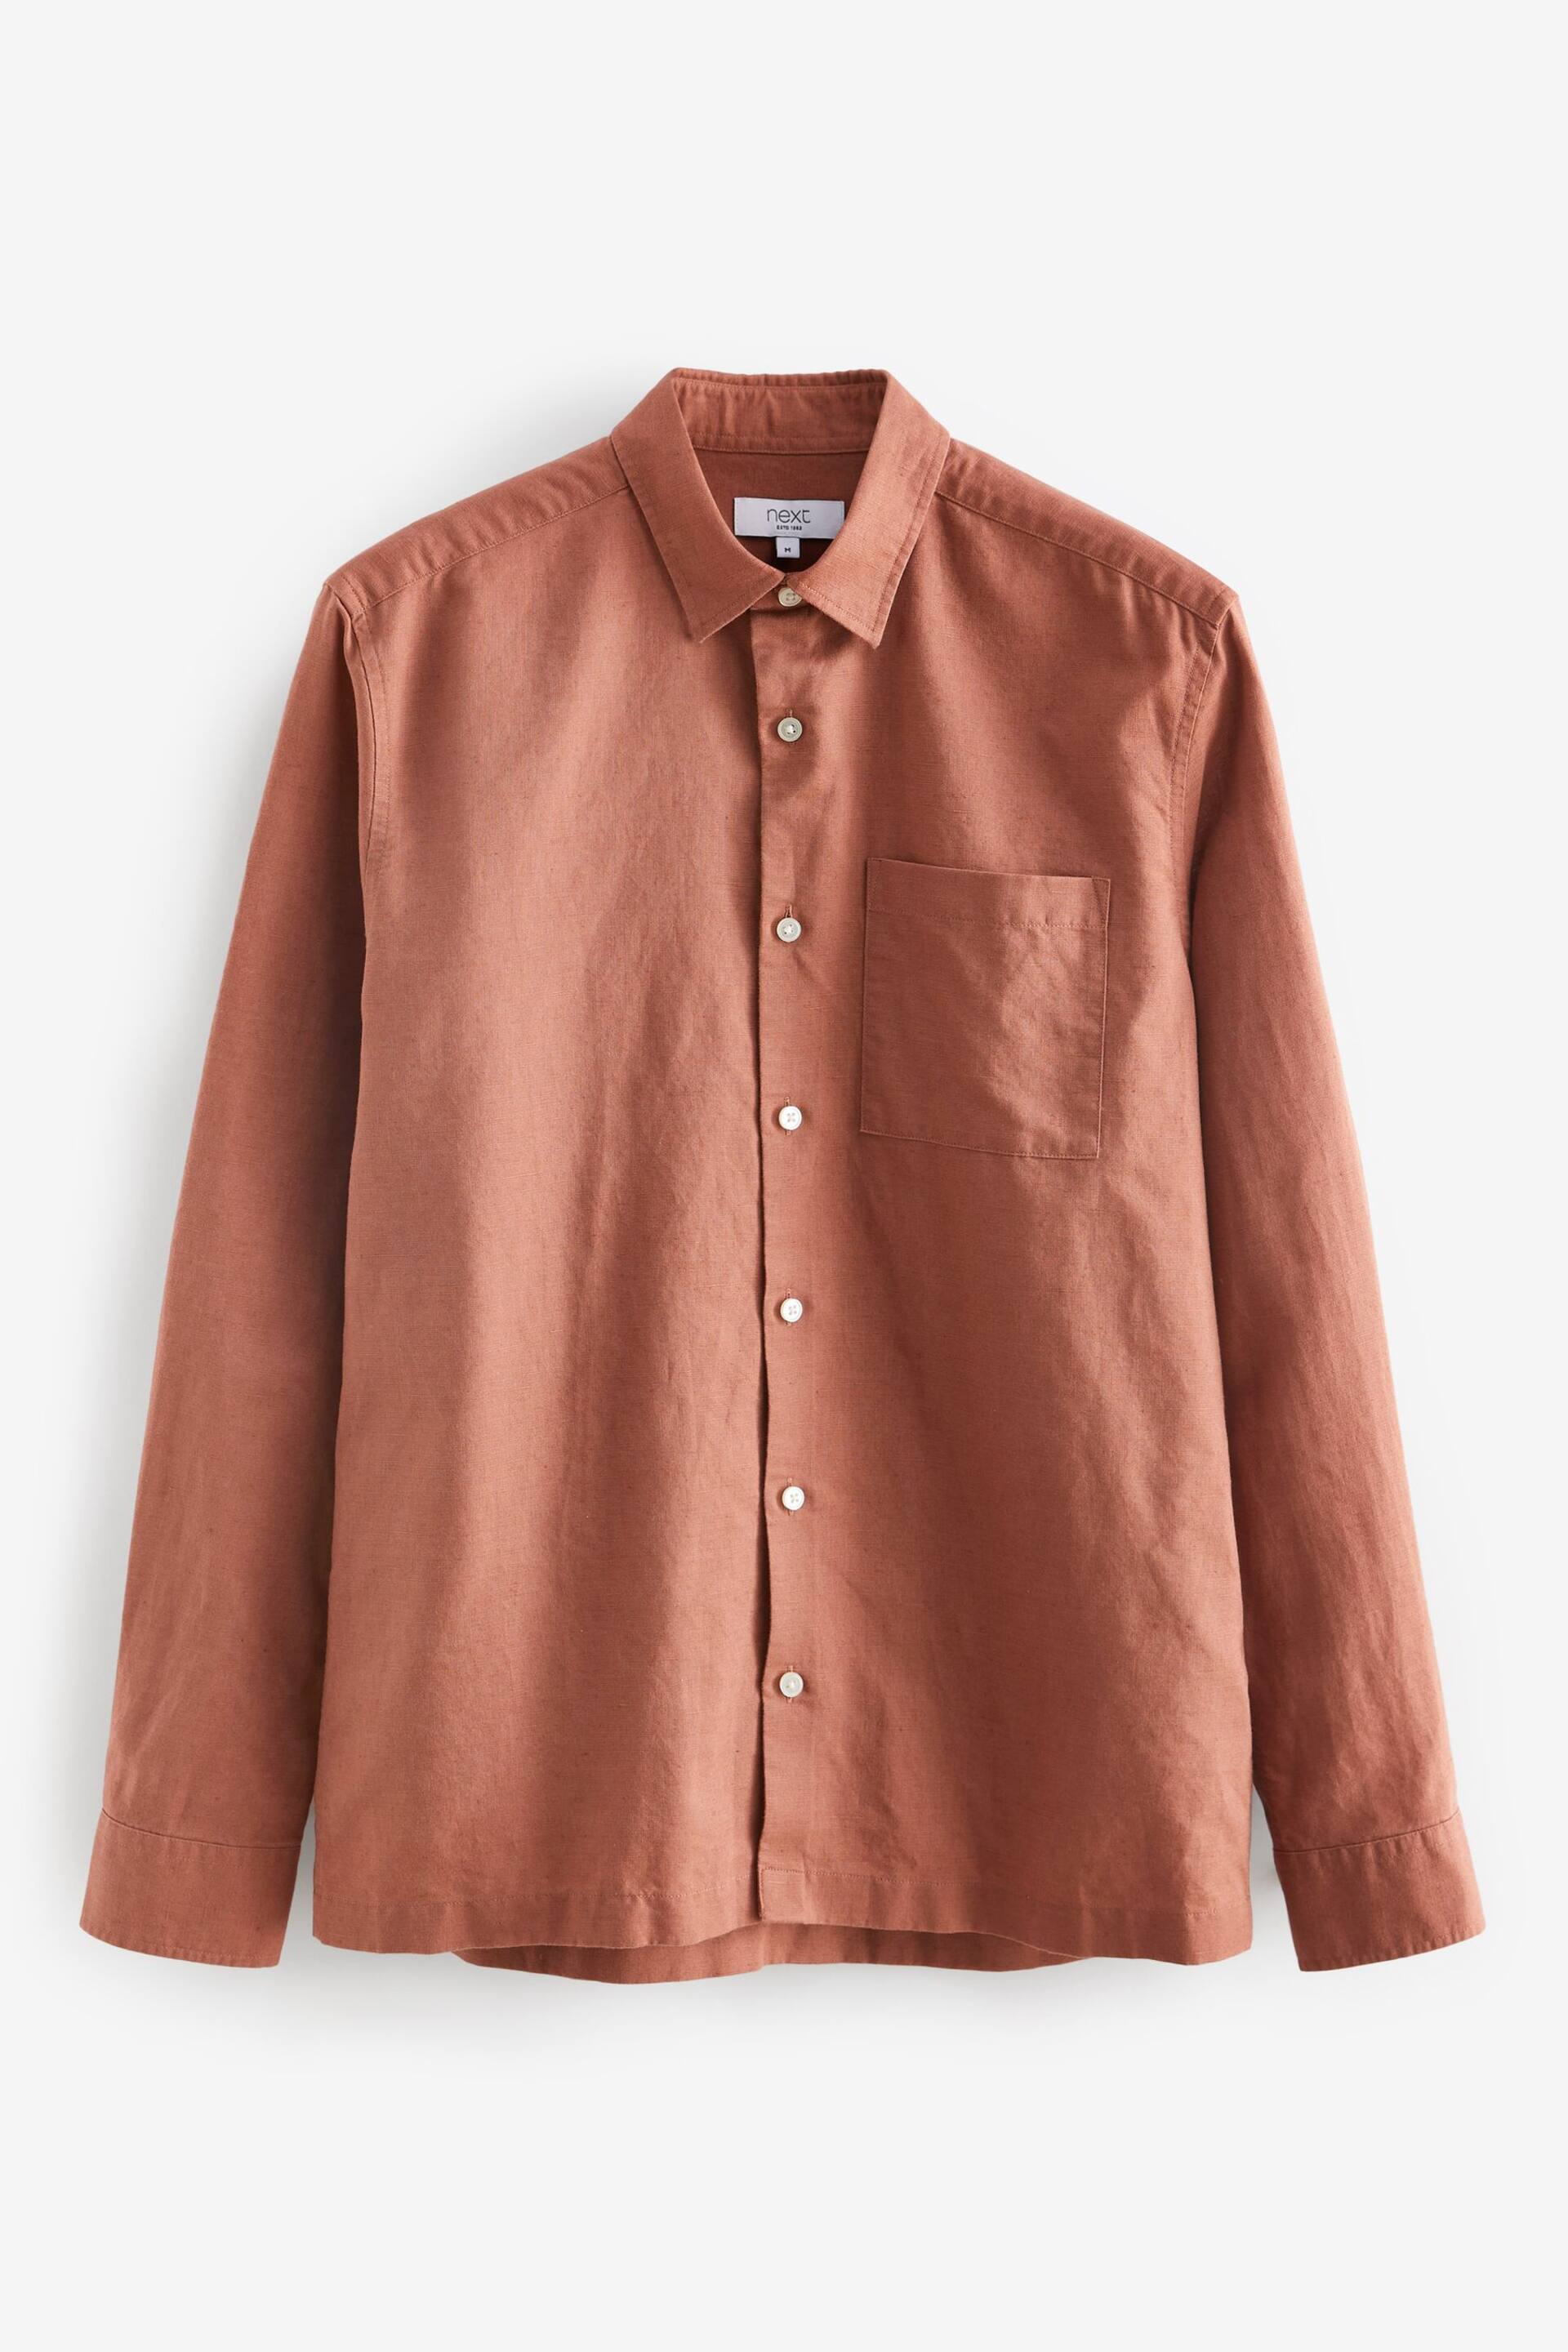 Brown Linen Blend Long Sleeve Shirt - Image 5 of 7